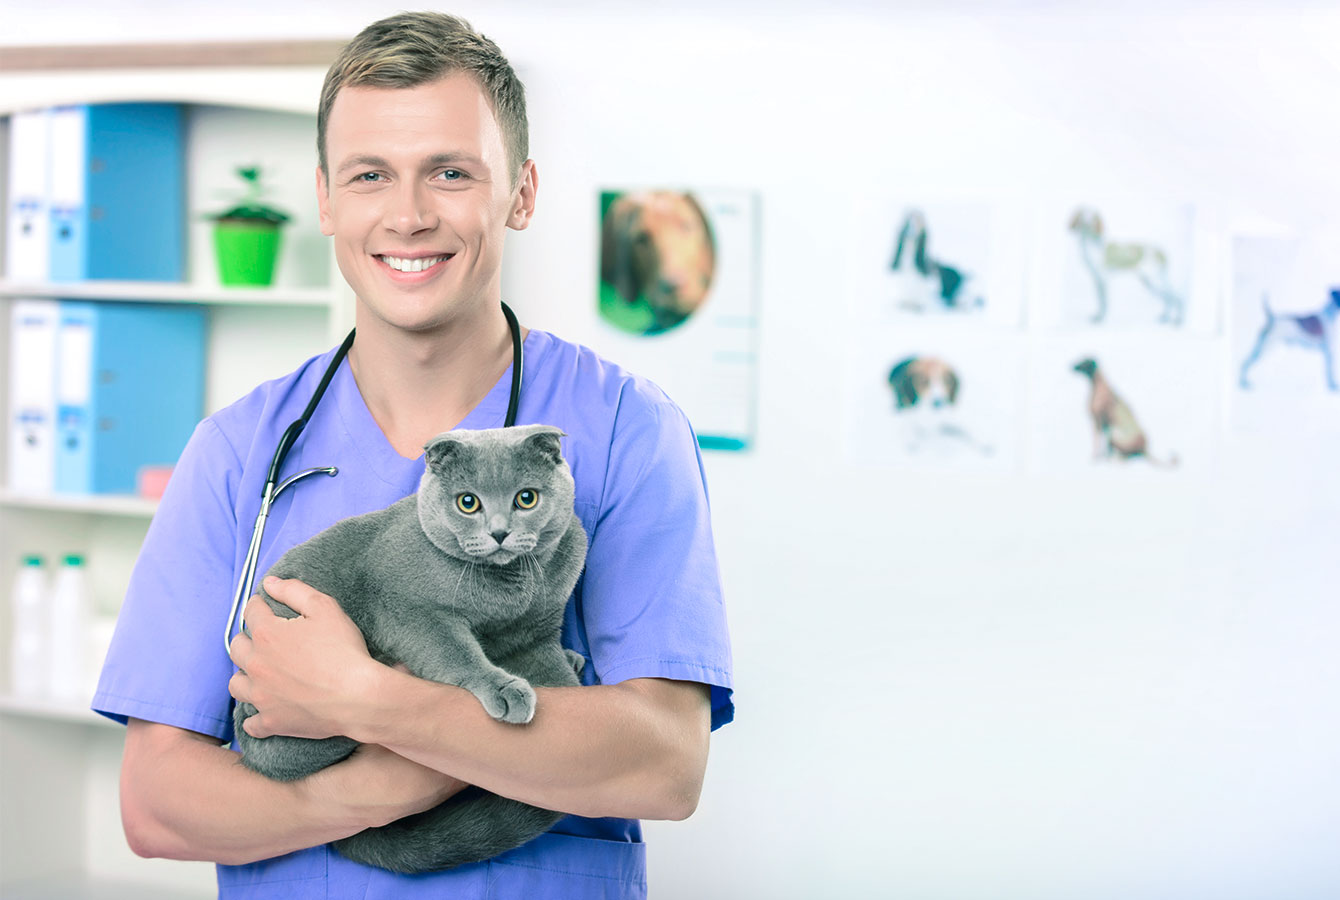 飼い主がPlanfy予約システムを使用してサービスを予約した猫を飼っている男性獣医。